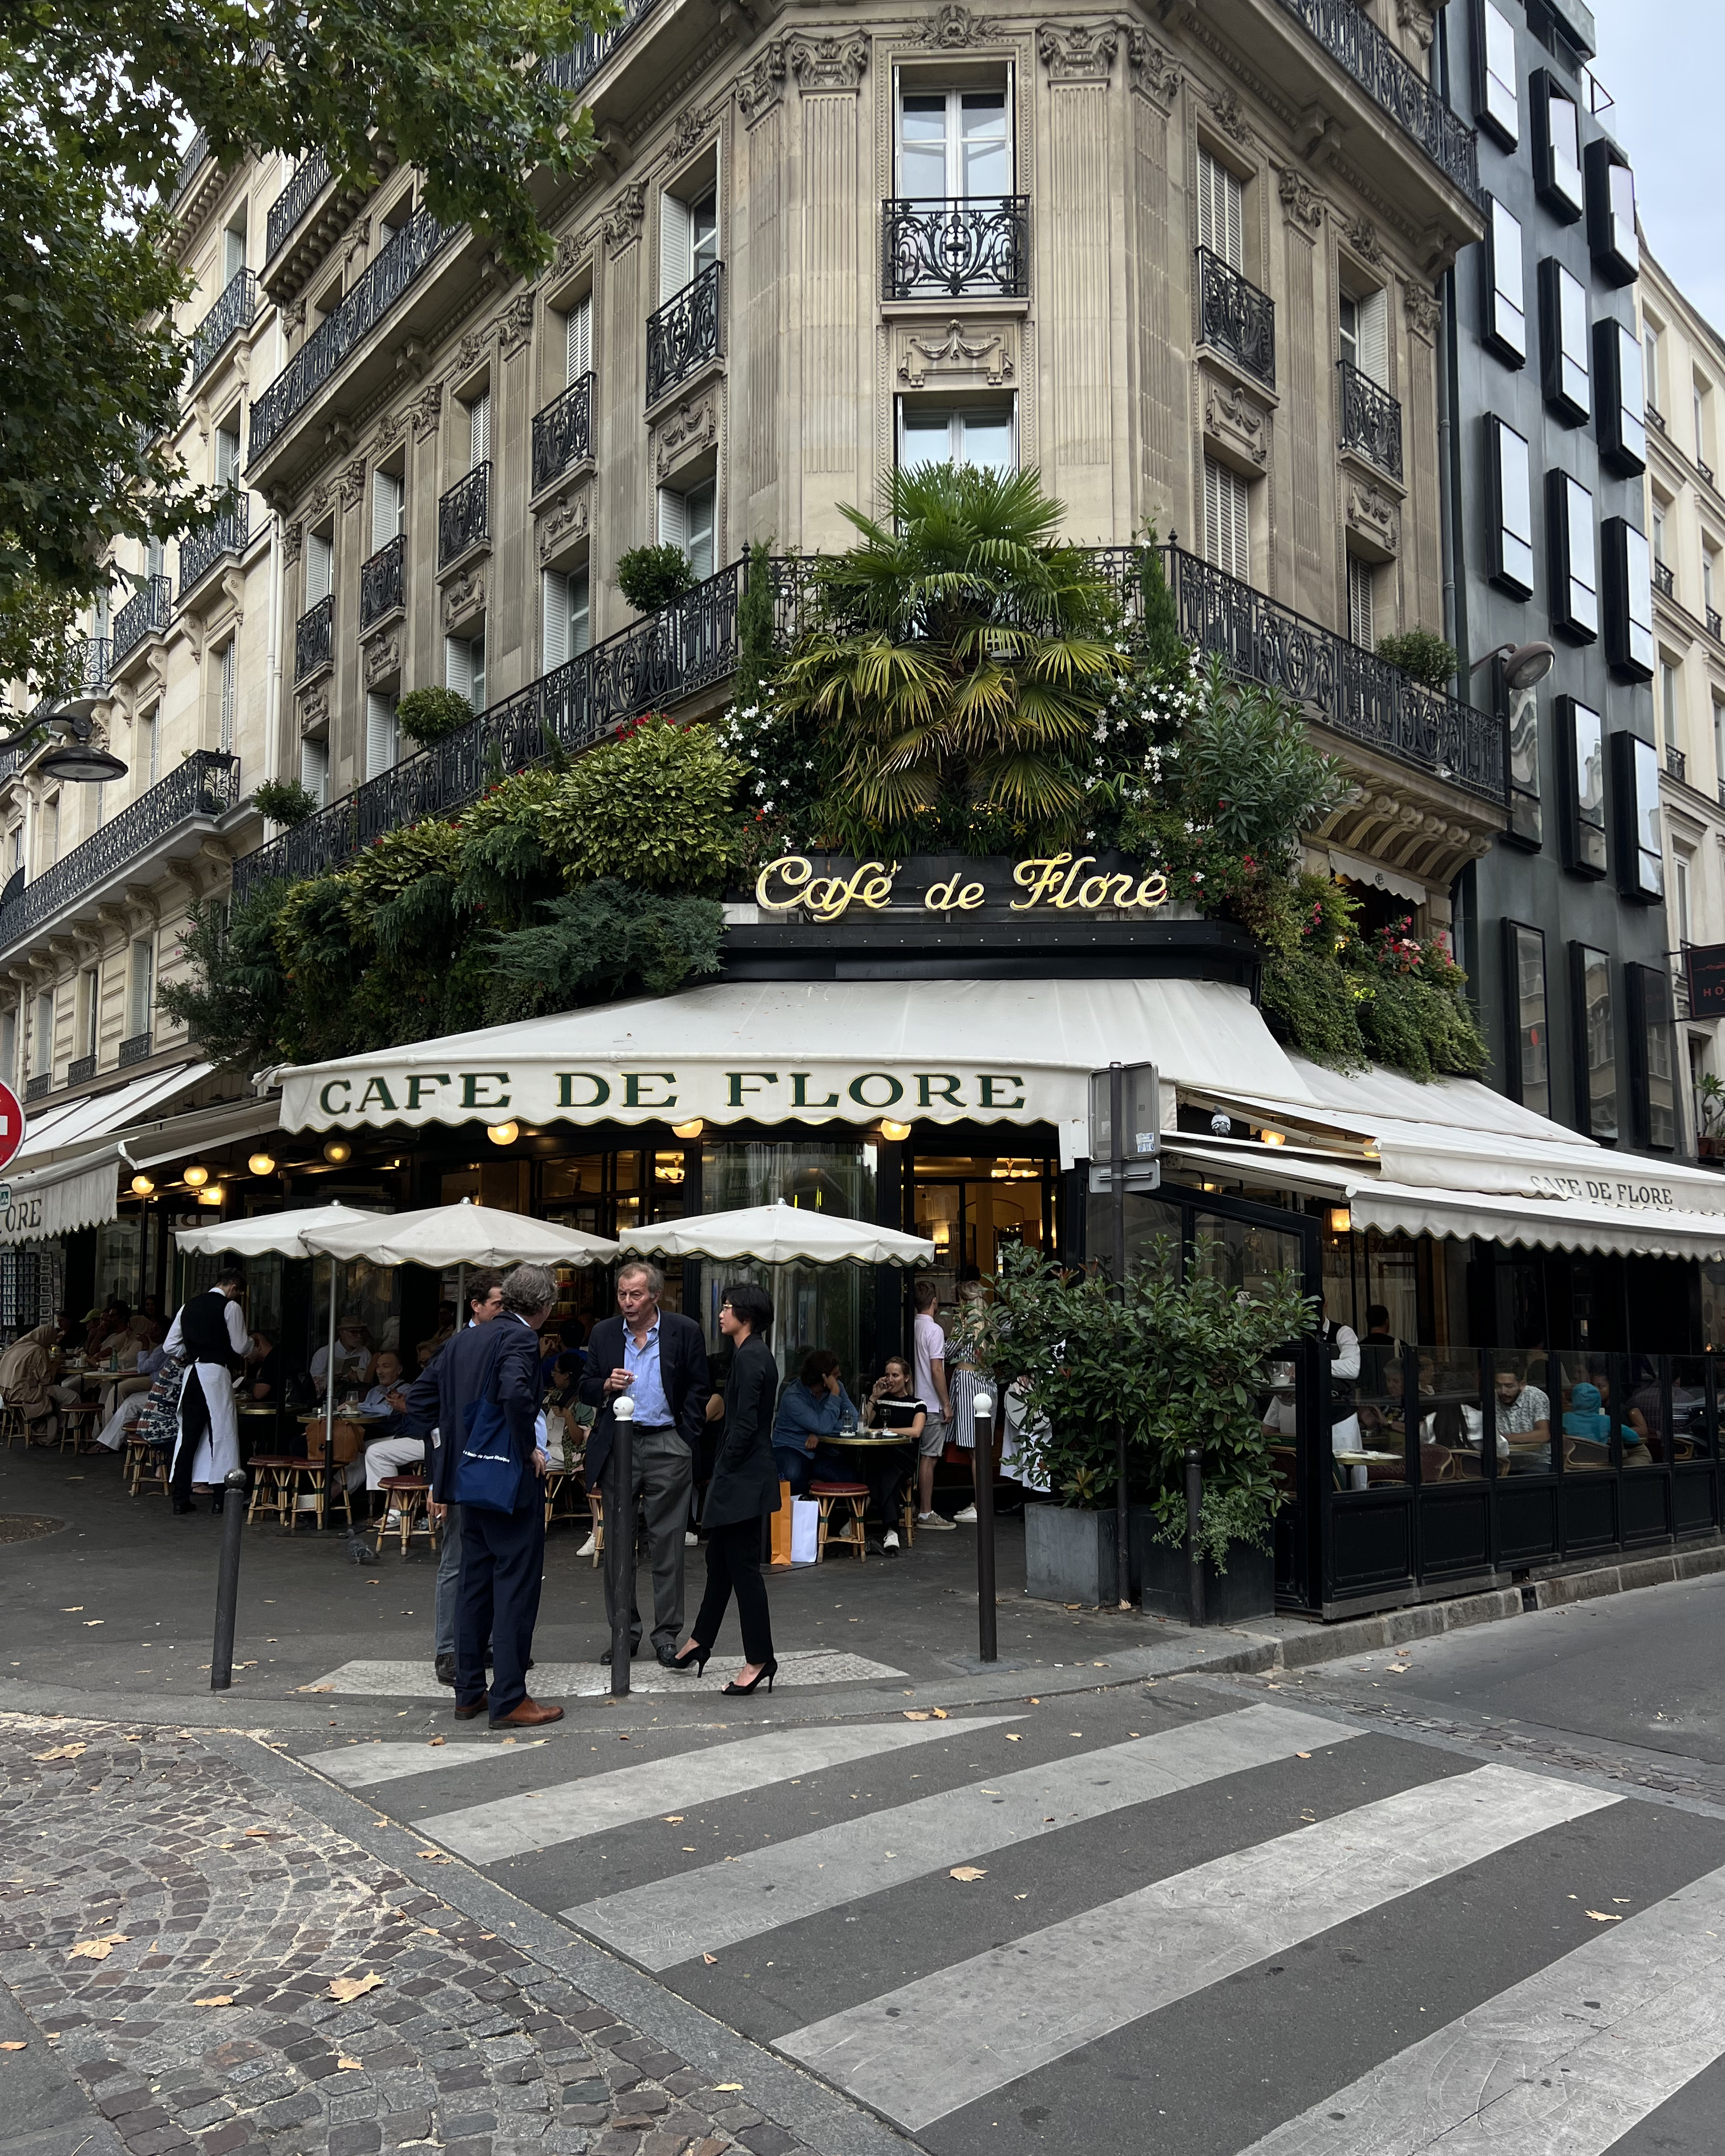 One of the prettiest cafes in Paris - Cafe de Flore 